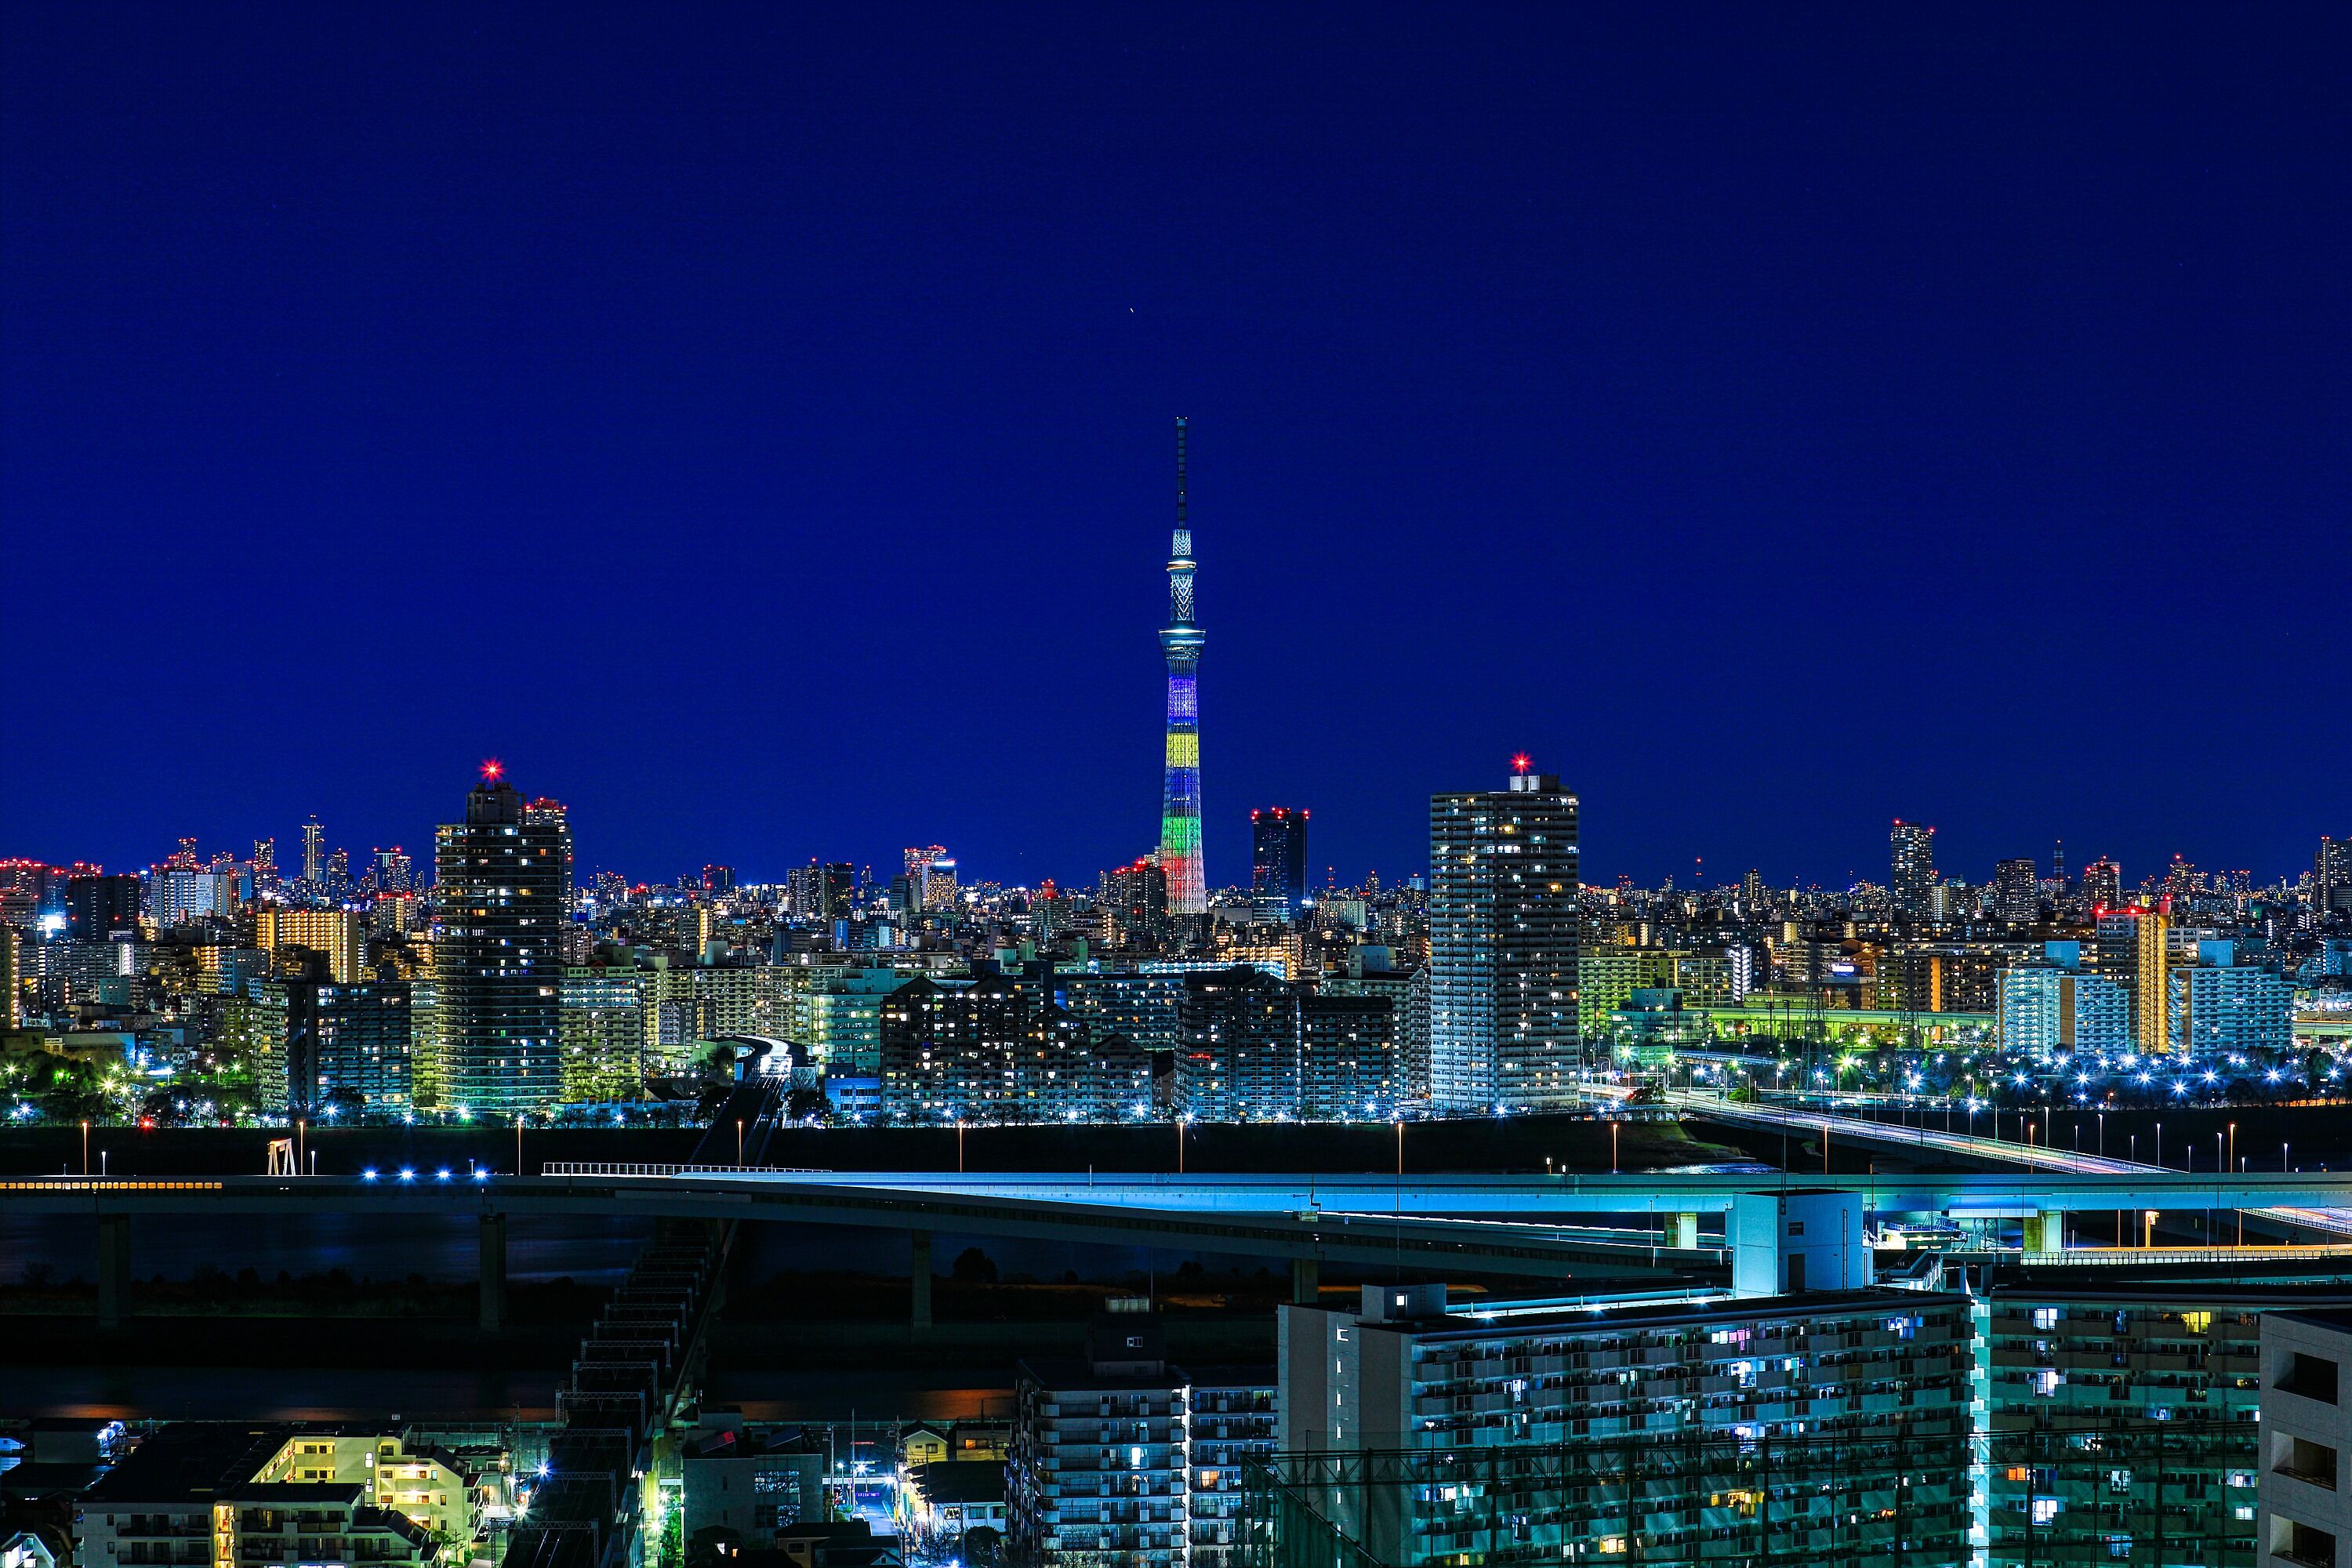 19年大晦日と年元旦の東京スカイツリー夜景 東京スカイツリー定点観測所